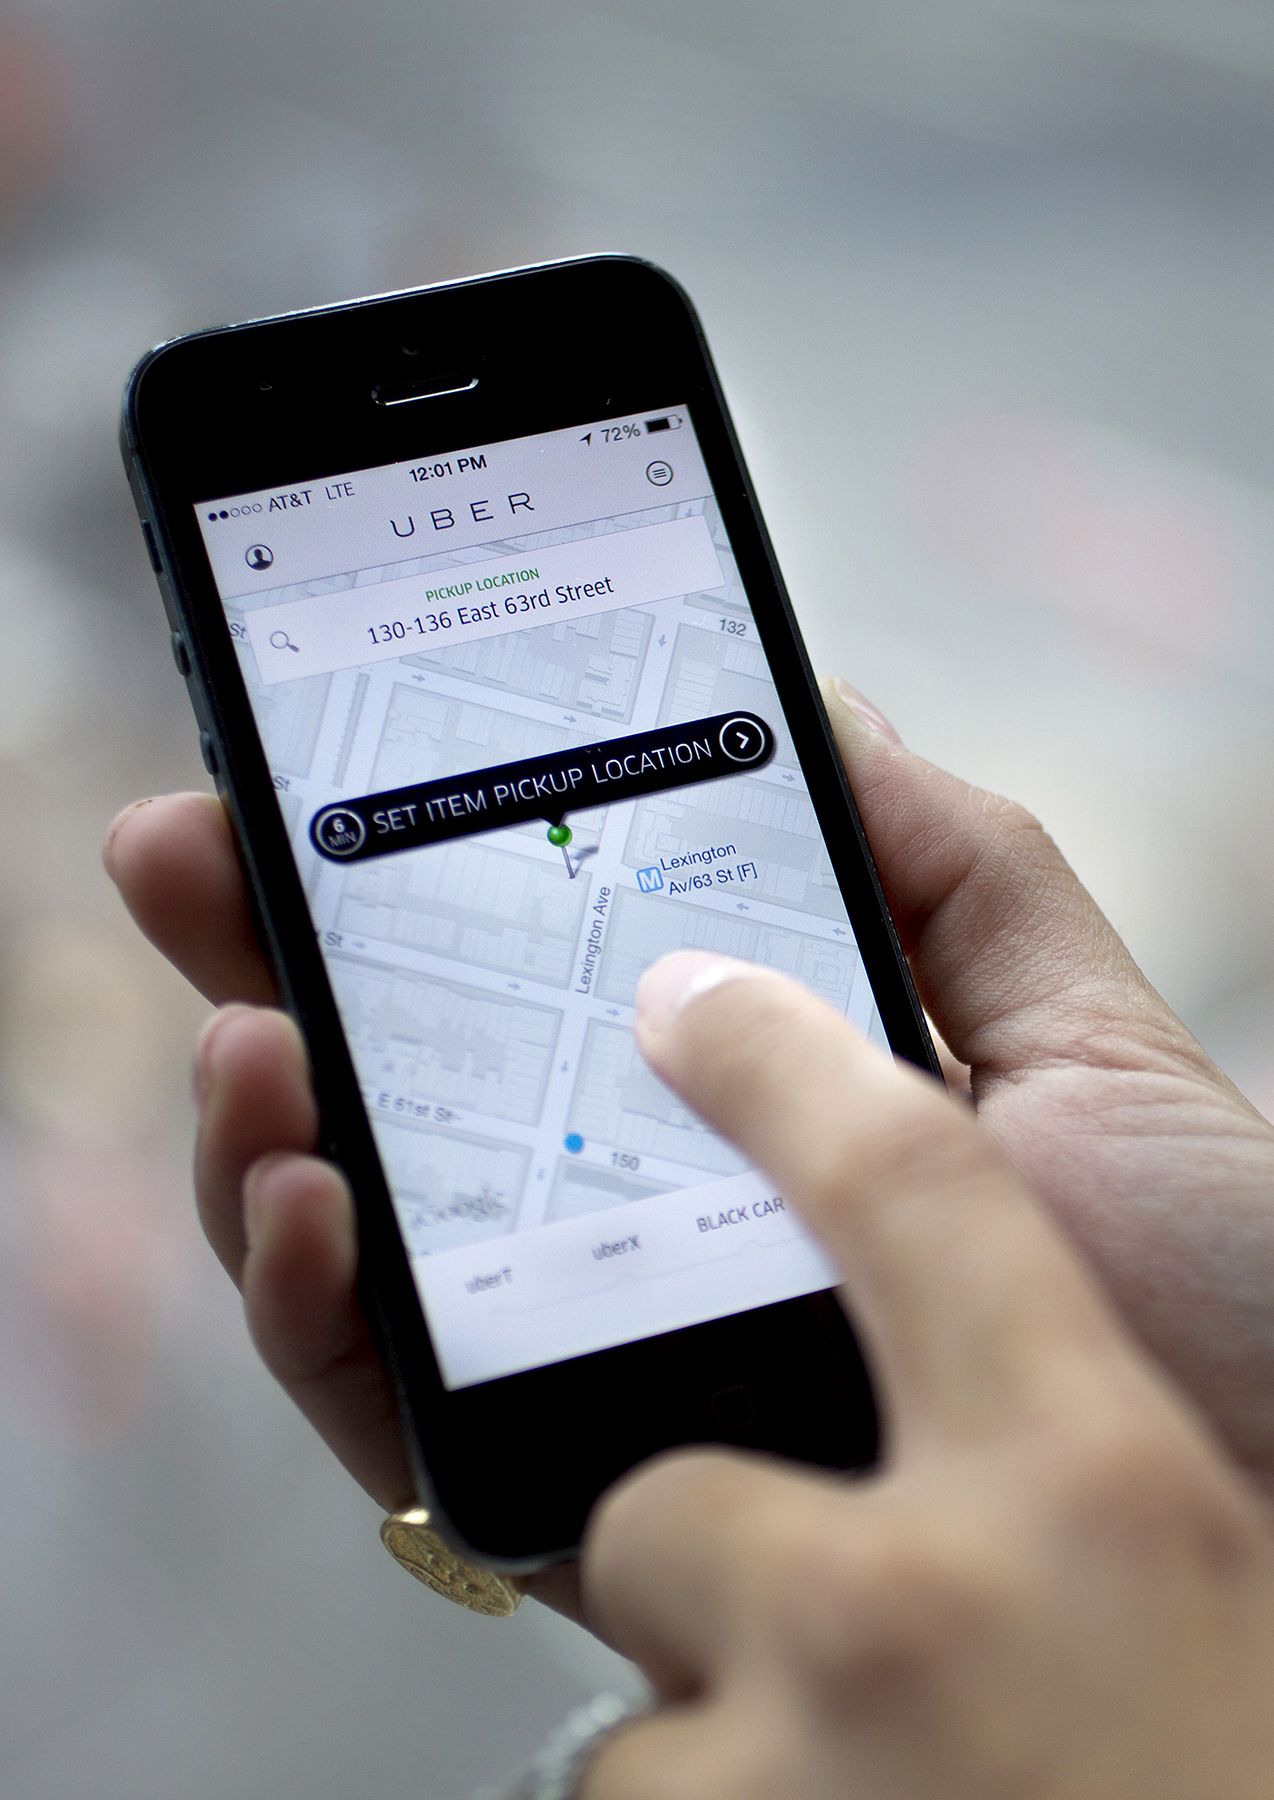 Խորհուրդ եք տալիս Uber վարորդներին Նոր դար-հին հարցը